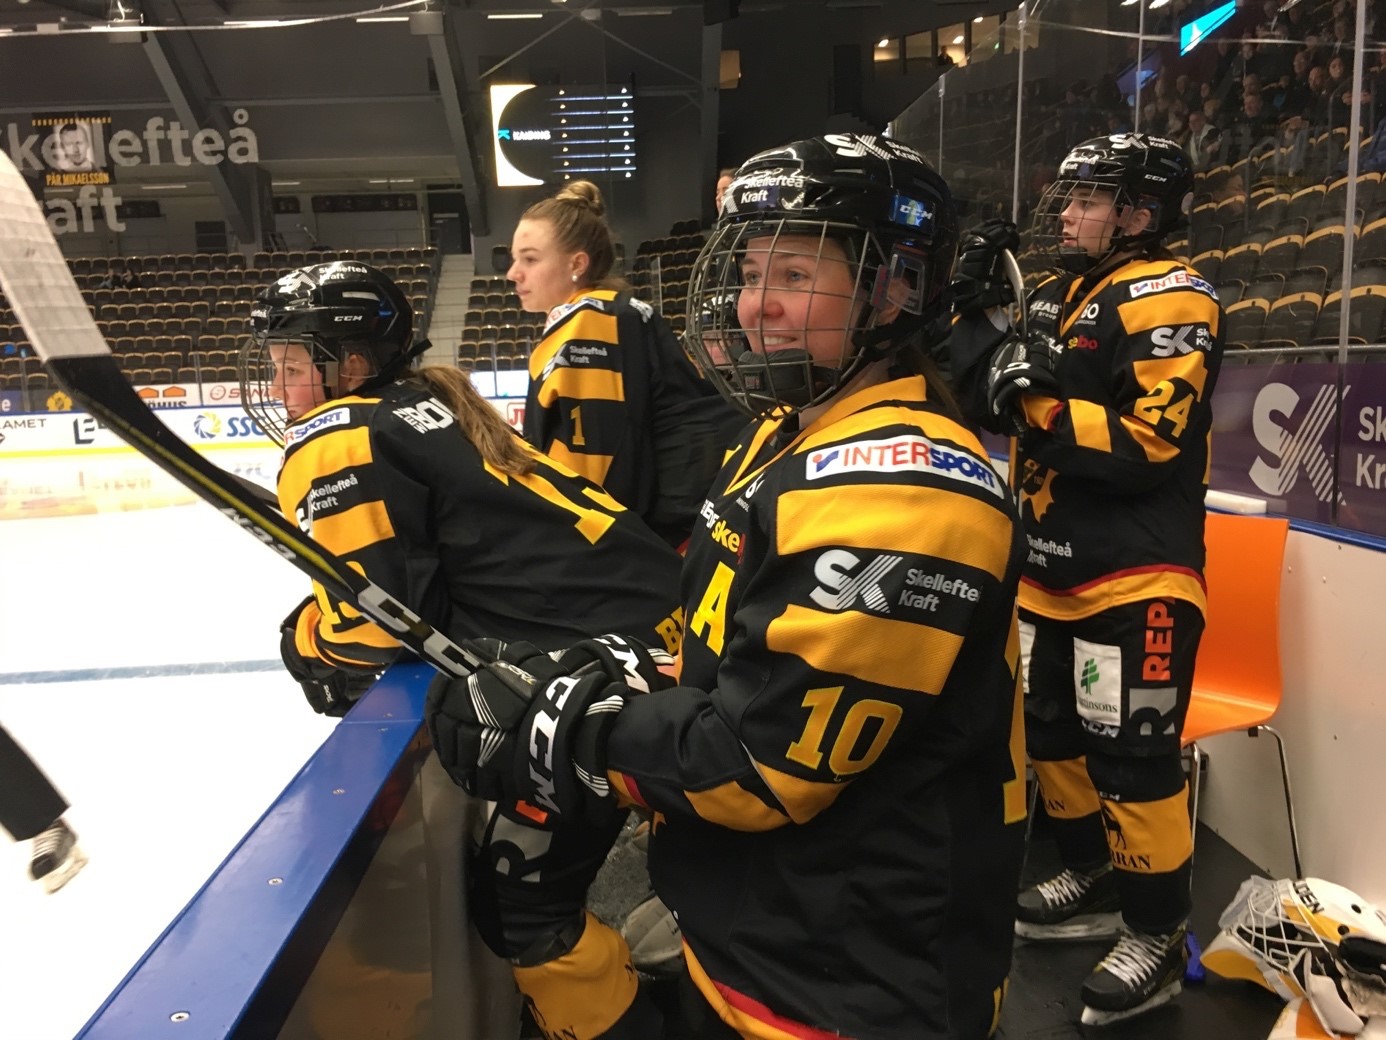 Glädjen var stor när Skellefteå AIK inledde en elitsatsning på damhockey. Här syns Miranda Dahlgren, Elin Lundqvist och Lovina Johansson i mars 2018. Foto: Robert Tedestedt.